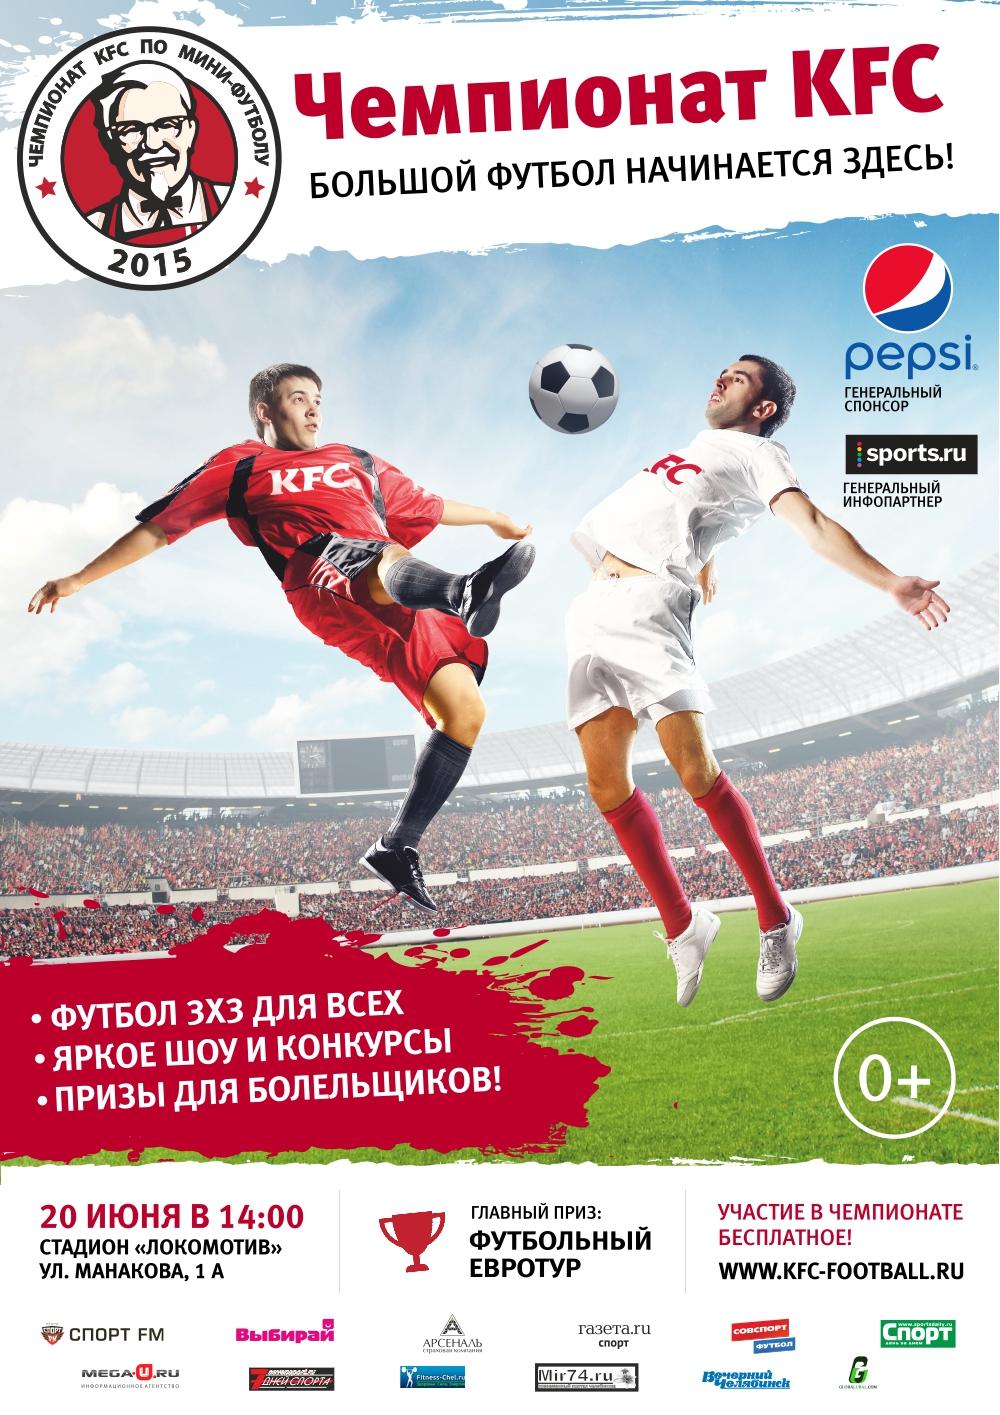  Считанные дни для регистрации участников Чемпионата KFC по мини-футболу в Челябинске